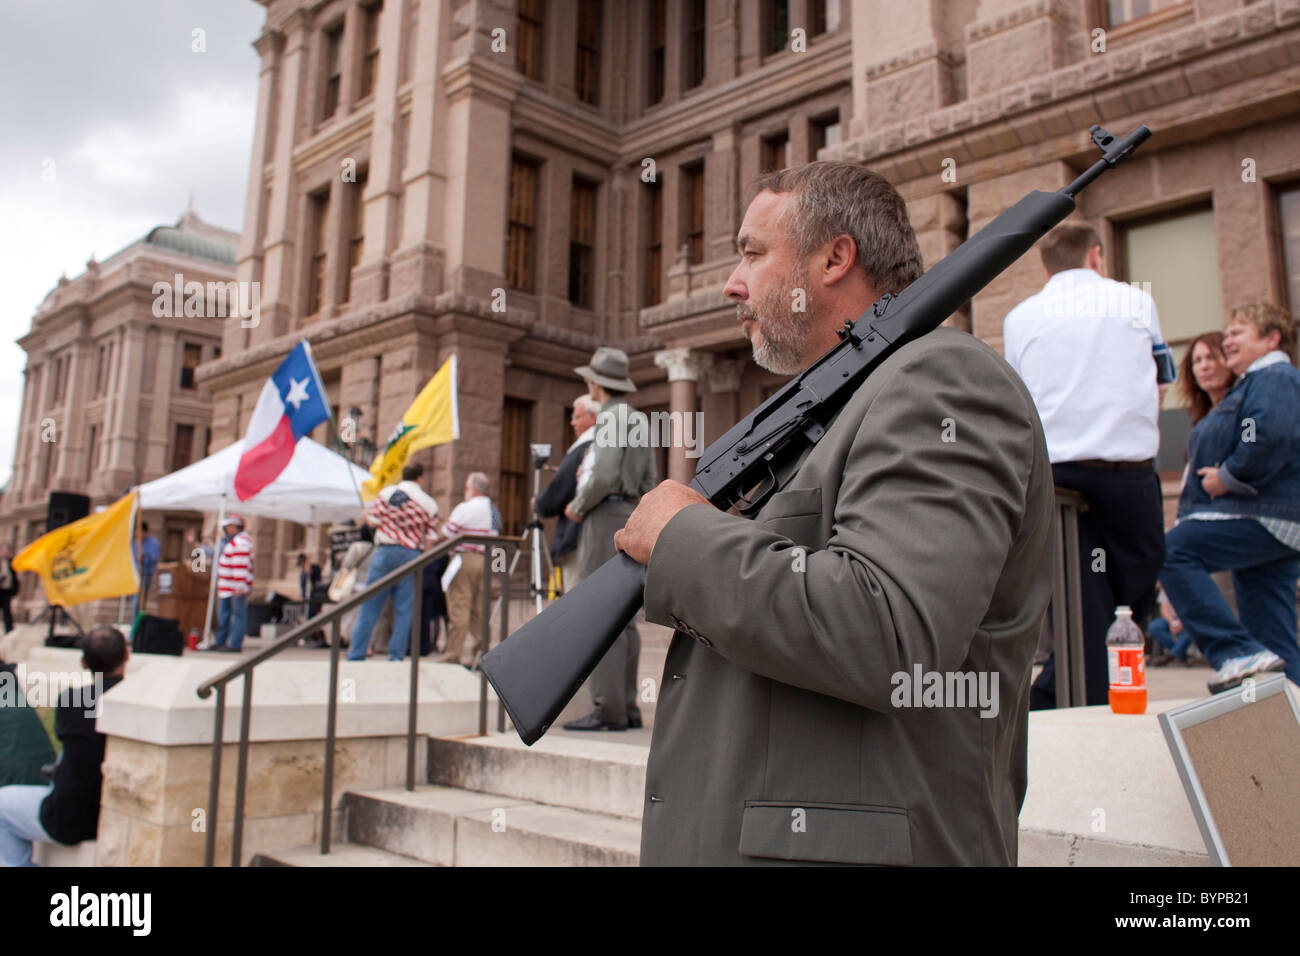 Anglo männliche steht vor dem Texas Capitol mit einem unbelasteten AK-47 Sturmgewehr während einer Tea-Party-Kundgebung in Austin Stockfoto